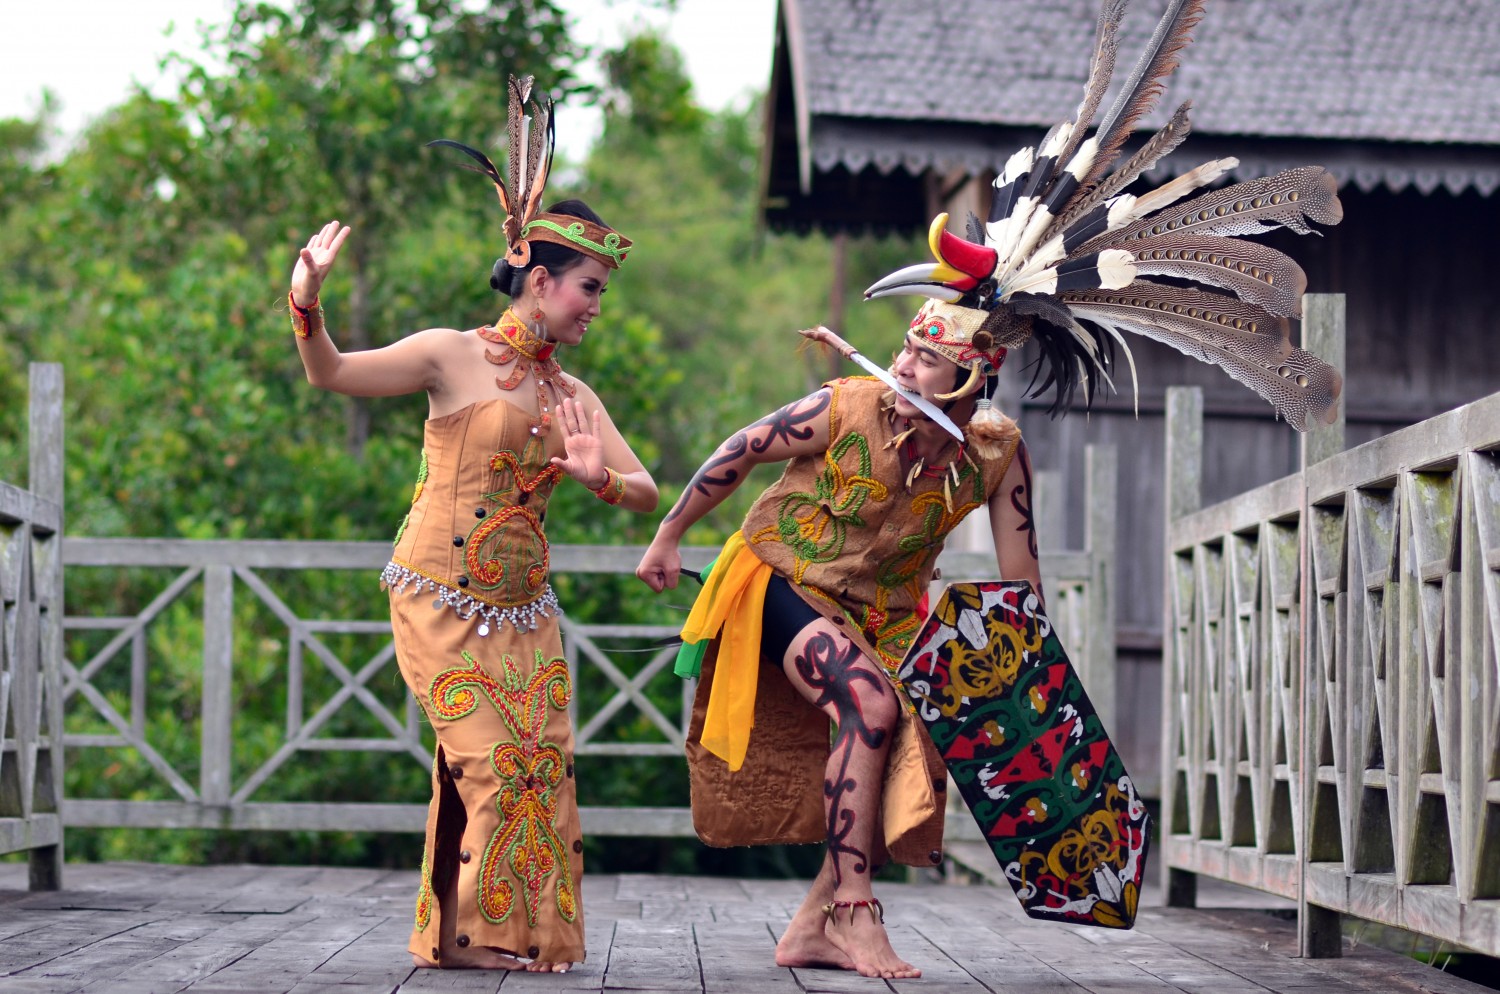 Eksplorasi kekayaan budaya Kalimantan melalui destinasi wisata tradisional